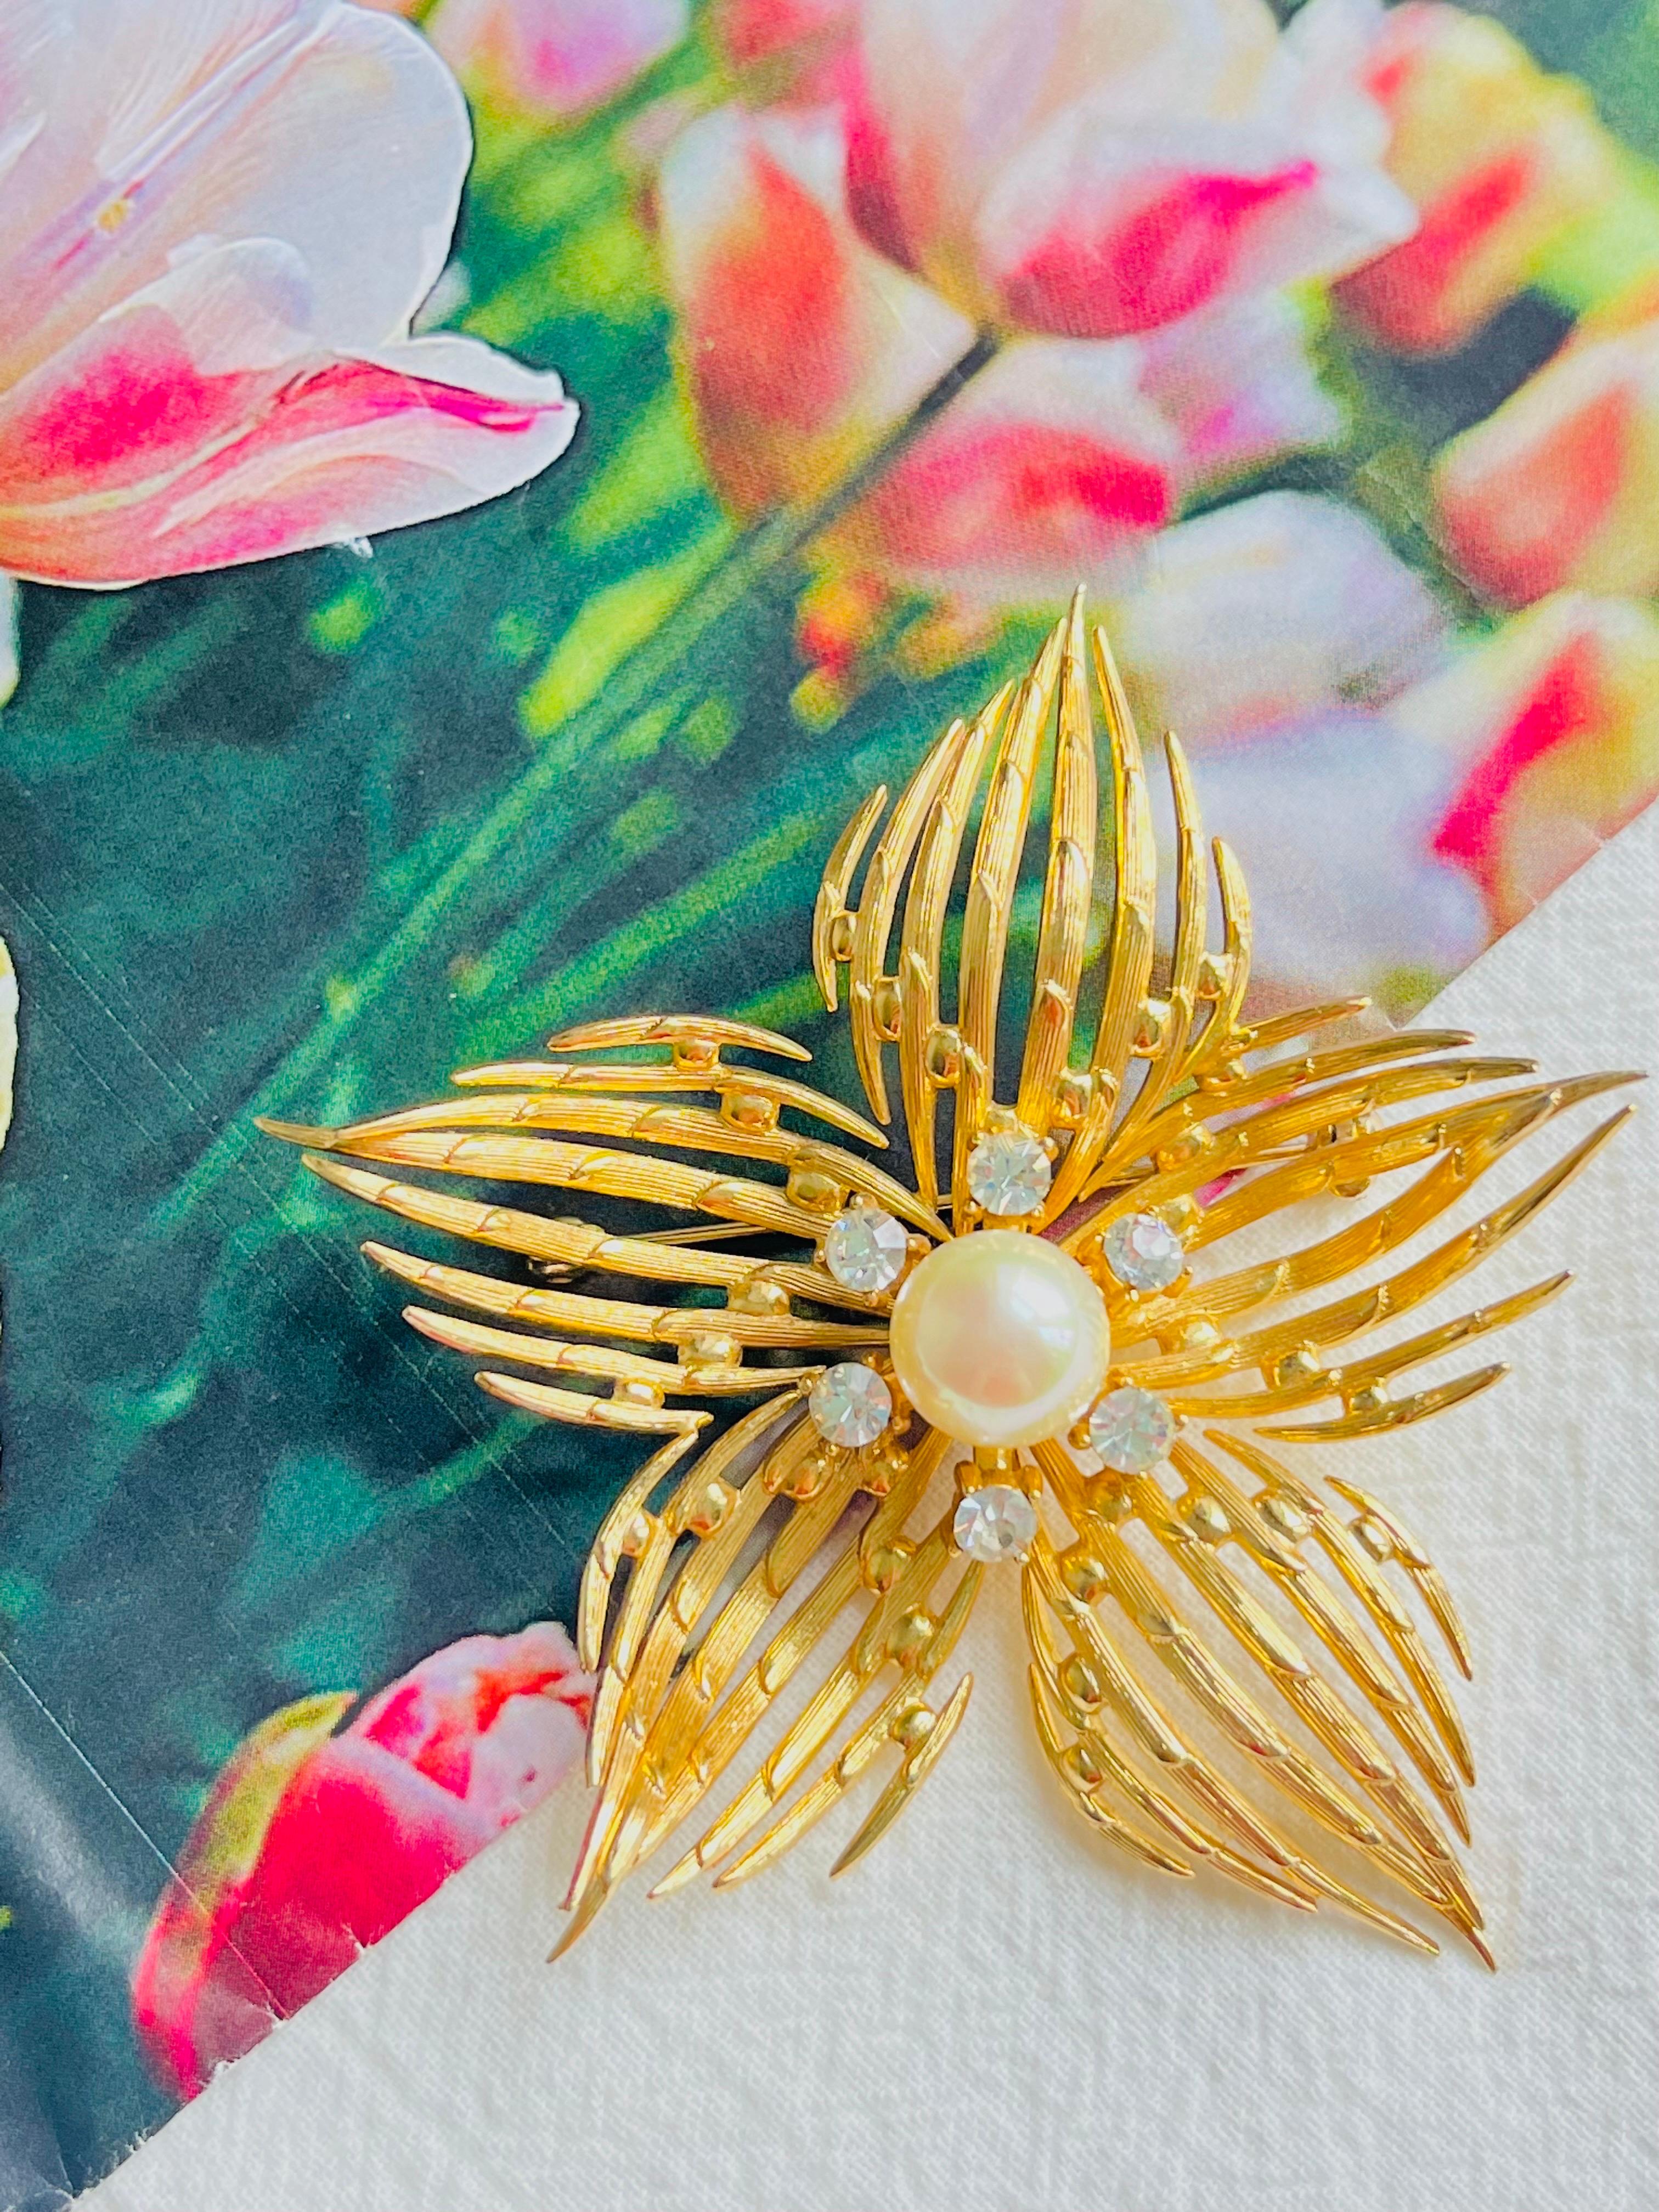 Christian Dior GROSSE 1968 Vintage Huge 3D Vivid Curled Openwork Flower Pentagram White Pearl Crystals Brooch, Gold Tone

Très bon état. Signé au dos. Rare à trouver. 100% authentique. 

MATERIAL : Métal doré, strass, fausses perles.

Taille : 7,5